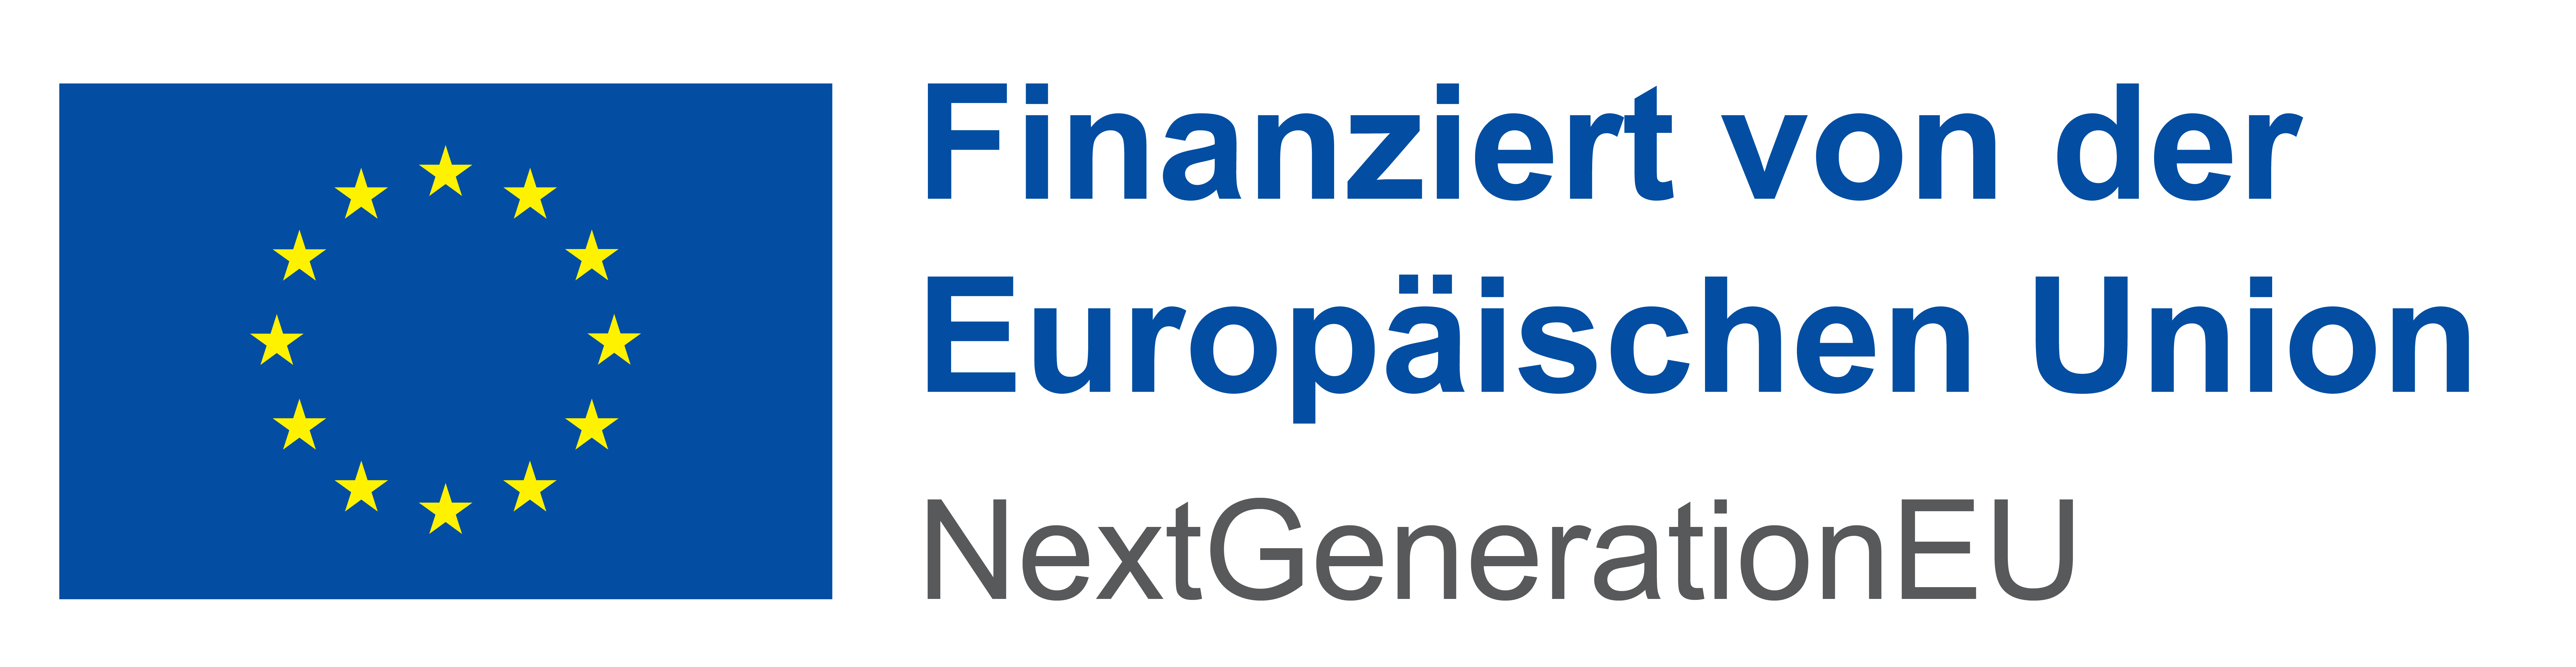 Logo NextGenerationEU - Finanziert von der Europäischen Union